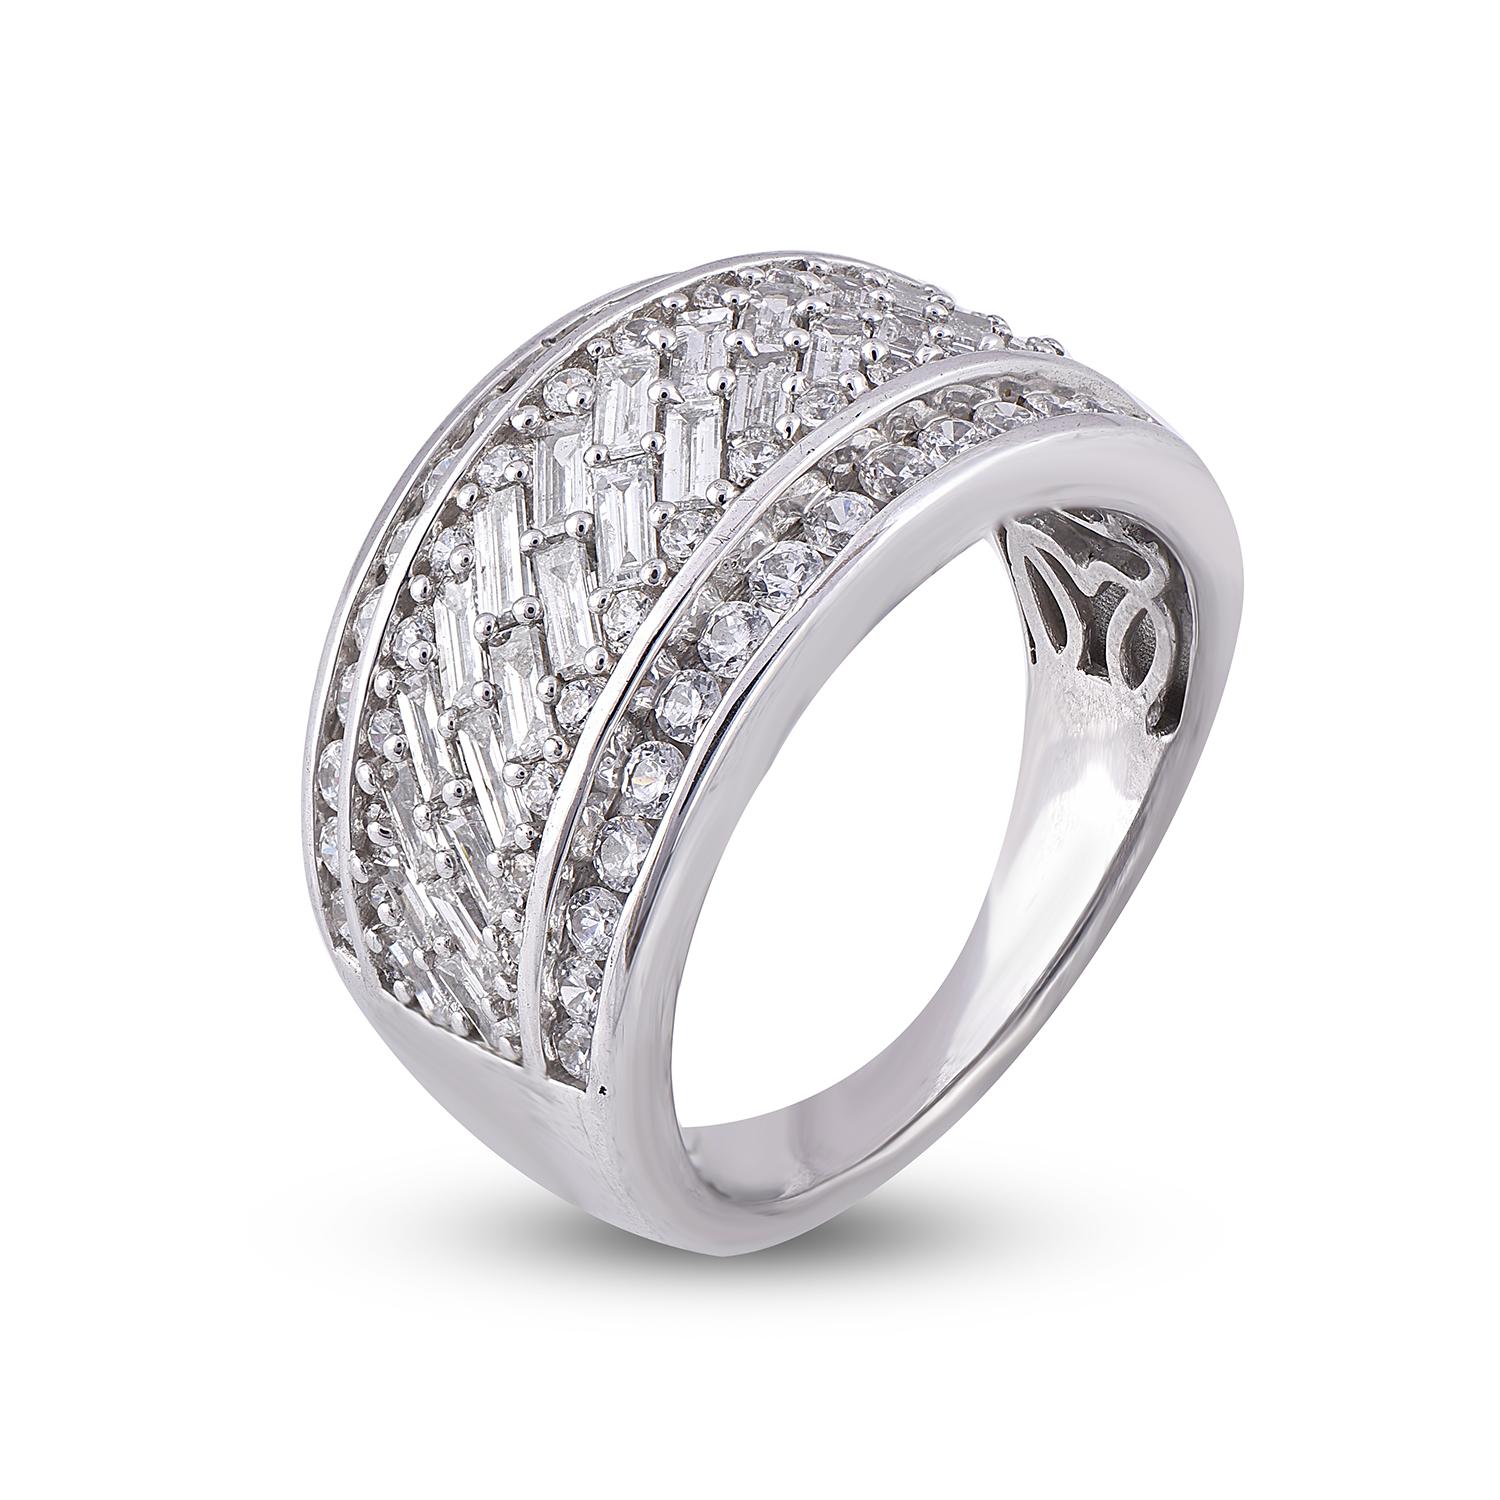 Dieser breite Ehering mit Diamanten wurde mit Blick auf die Romantik entworfen und erhöht den Funkelfaktor. Der Ring ist aus 14-karätigem Gold in Weiß-, Rosé- oder Gelbgold gefertigt und verfügt über 54 runde und 28 Baguette-Diamanten in